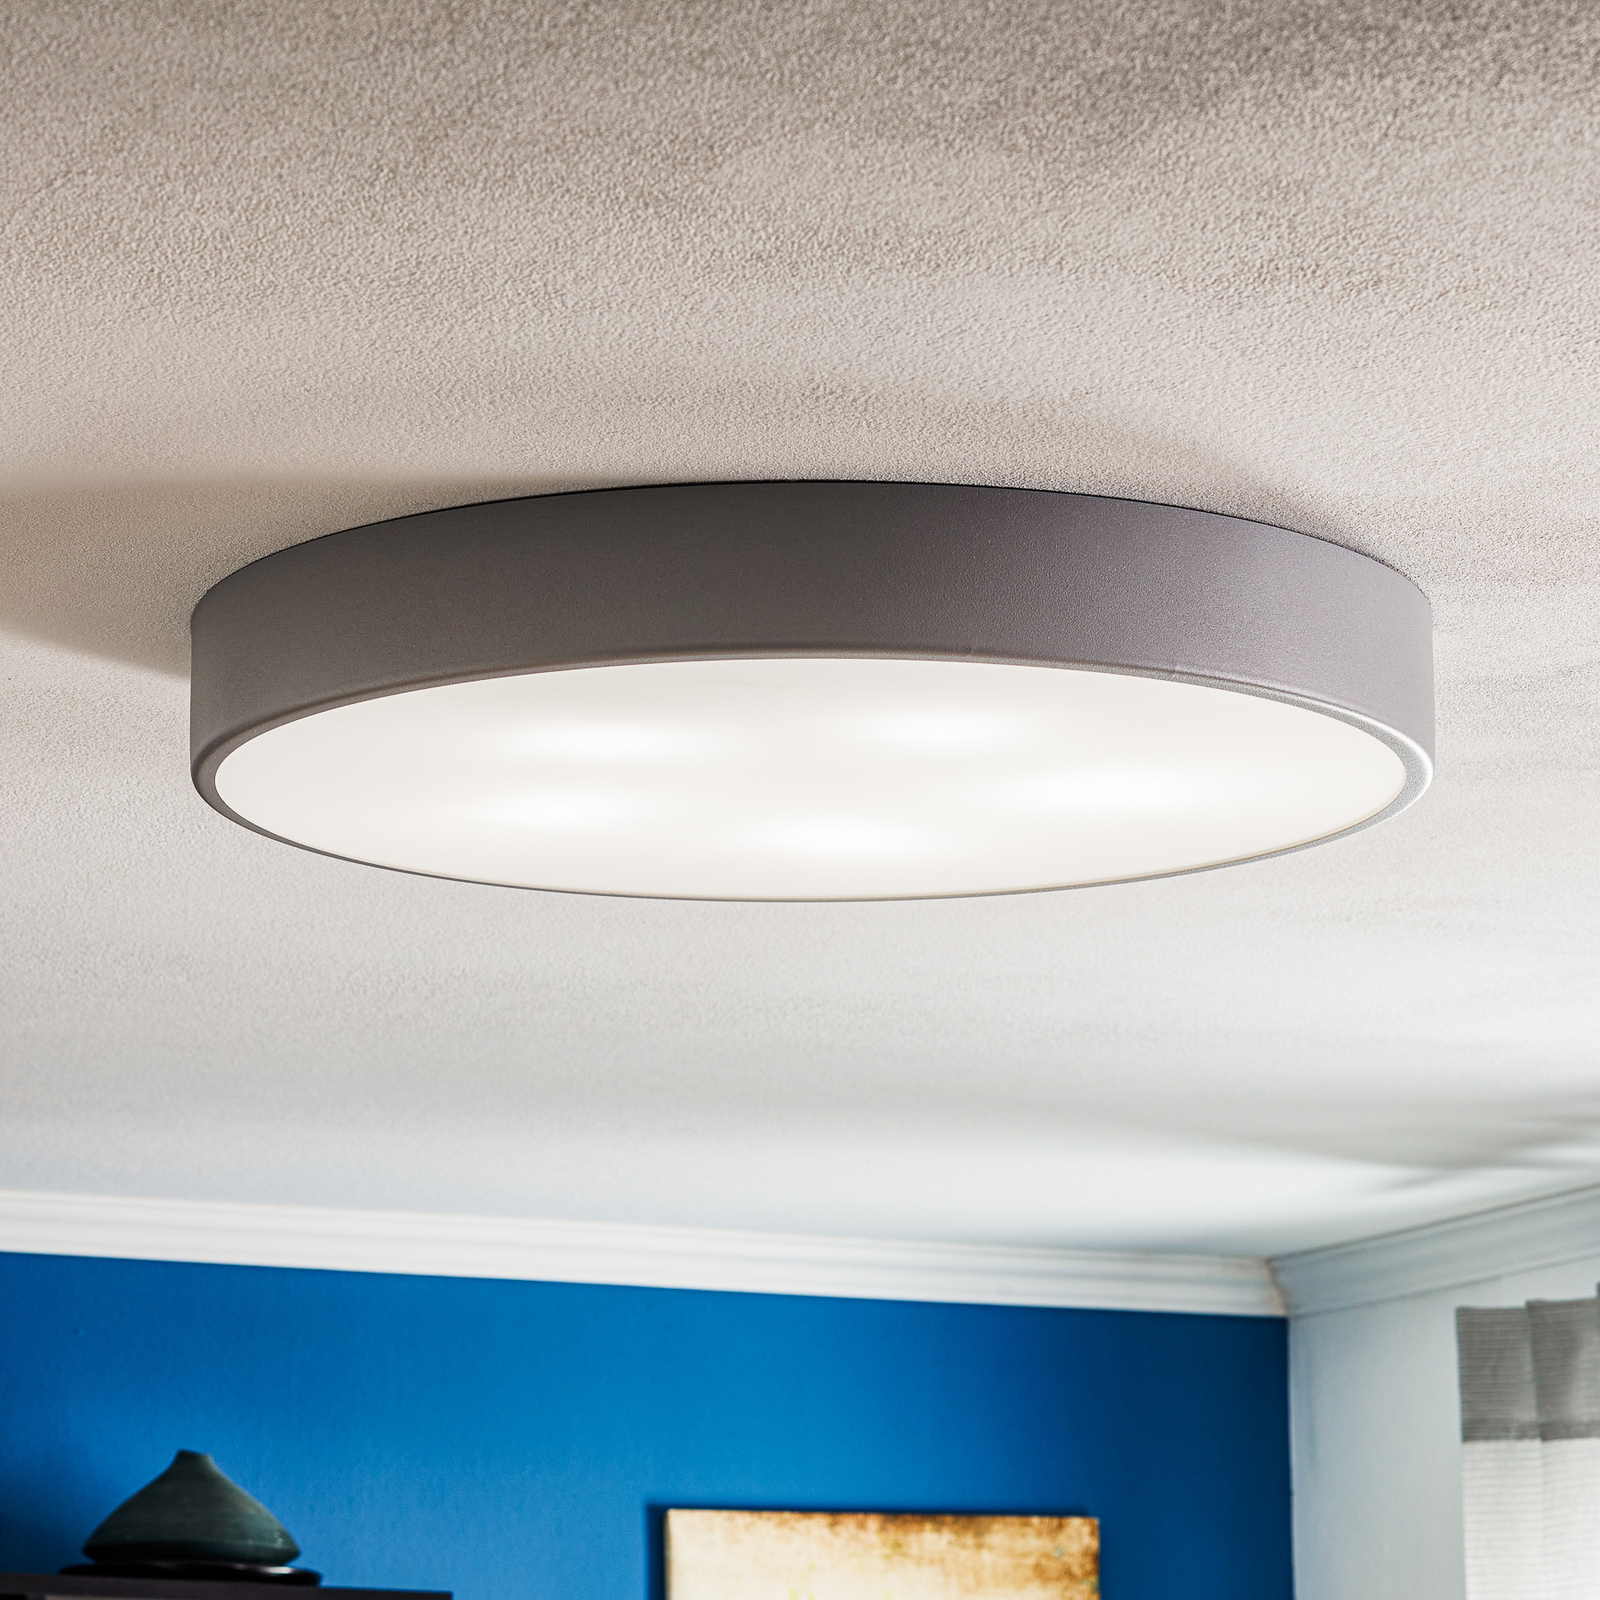 Cleo 600 ceiling light, sensor, Ø 60 cm grey